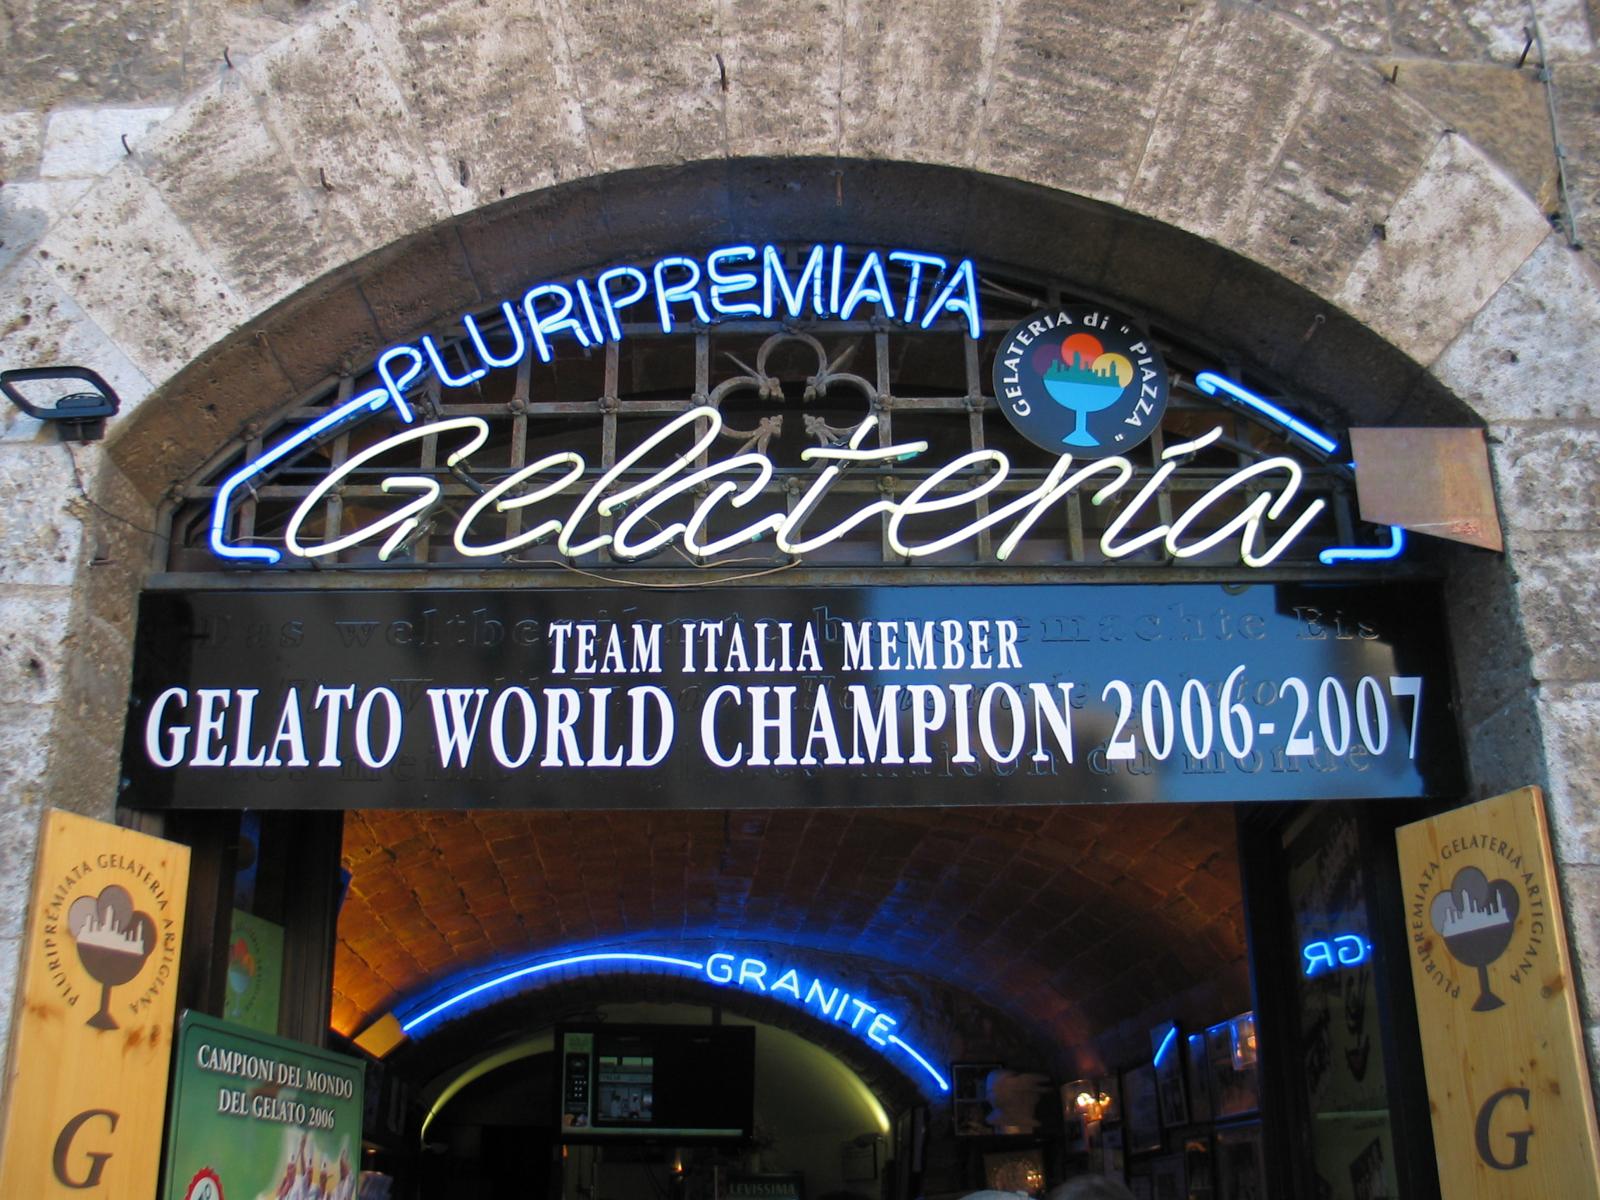 Gelato World Champion 2006/07